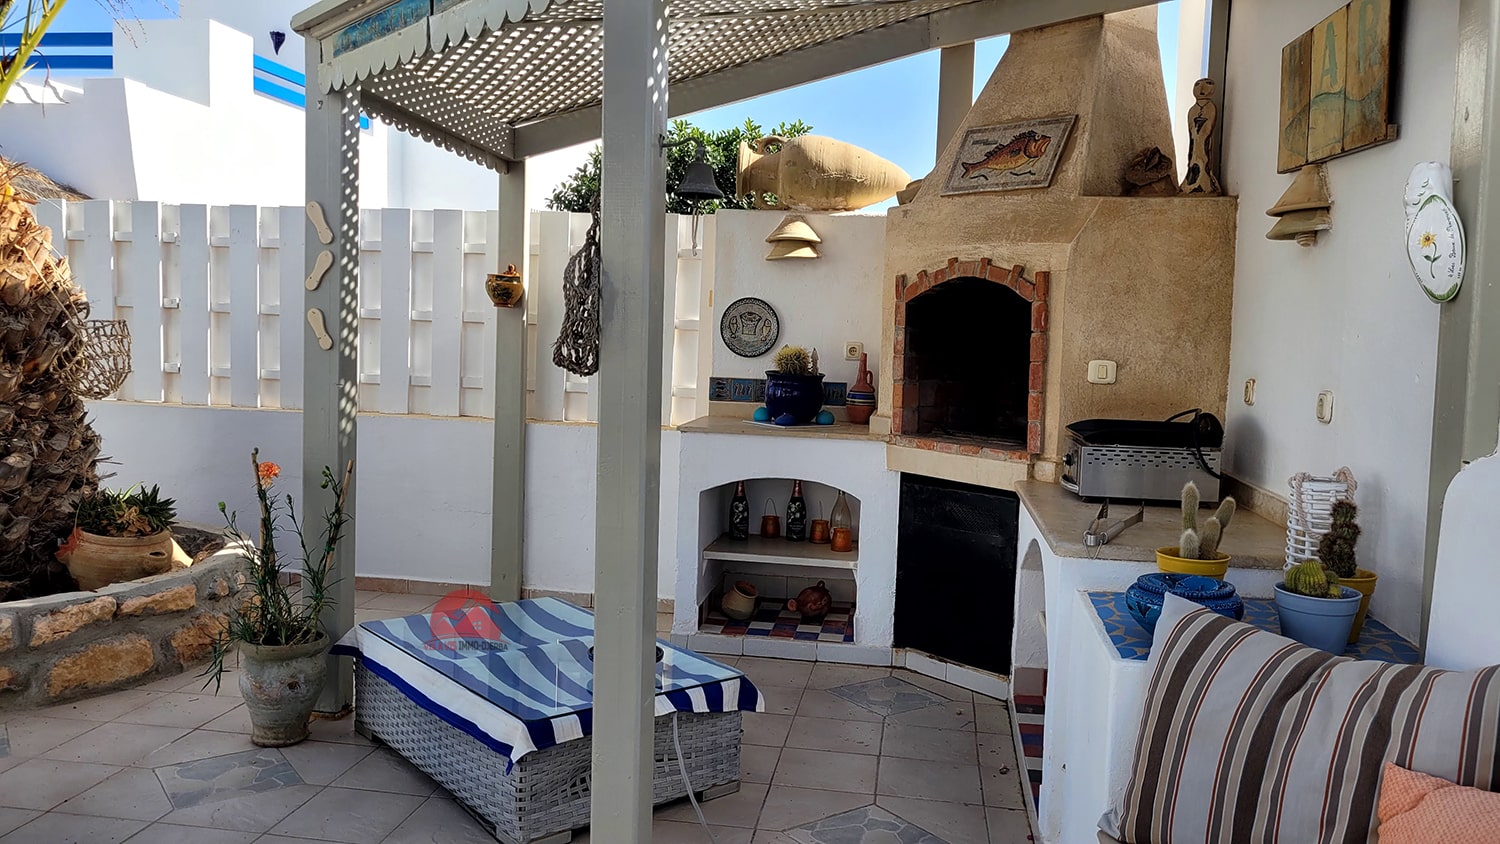 Djerba - Midoun Zone Hoteliere Vente Maisons Villa avec piscine z touristique djerba ref v623